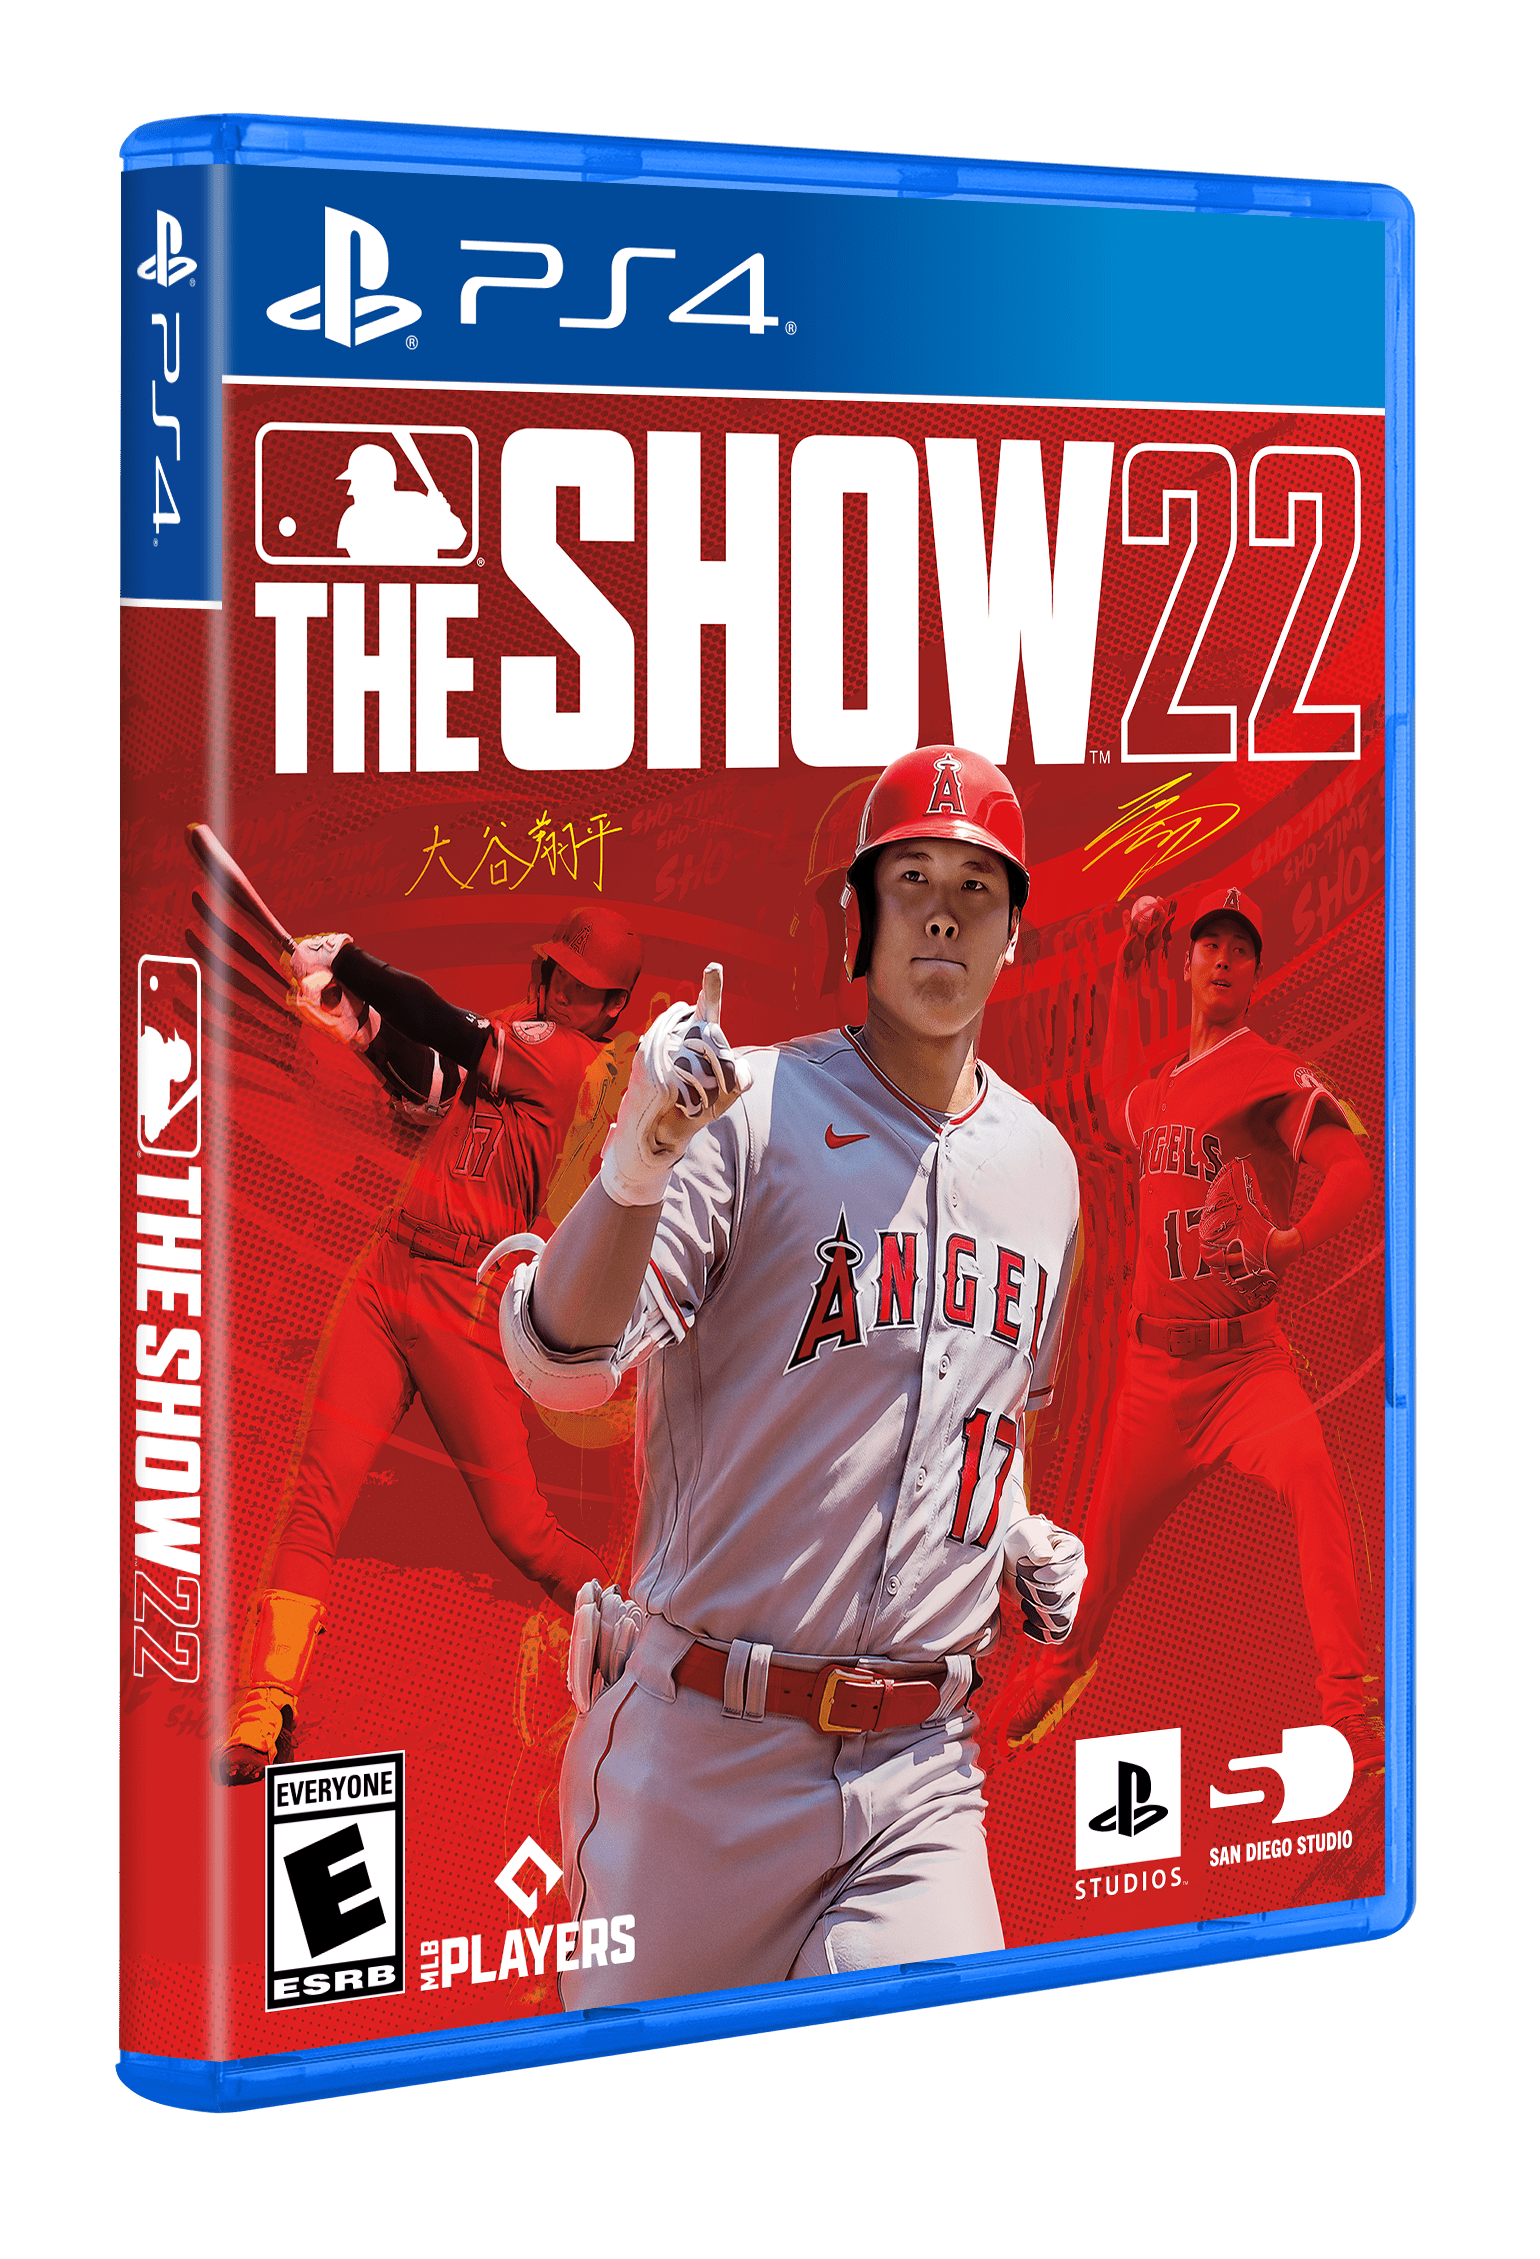 MLB The Show 22》預定於2022年4月5日發售| NOVA資訊廣場